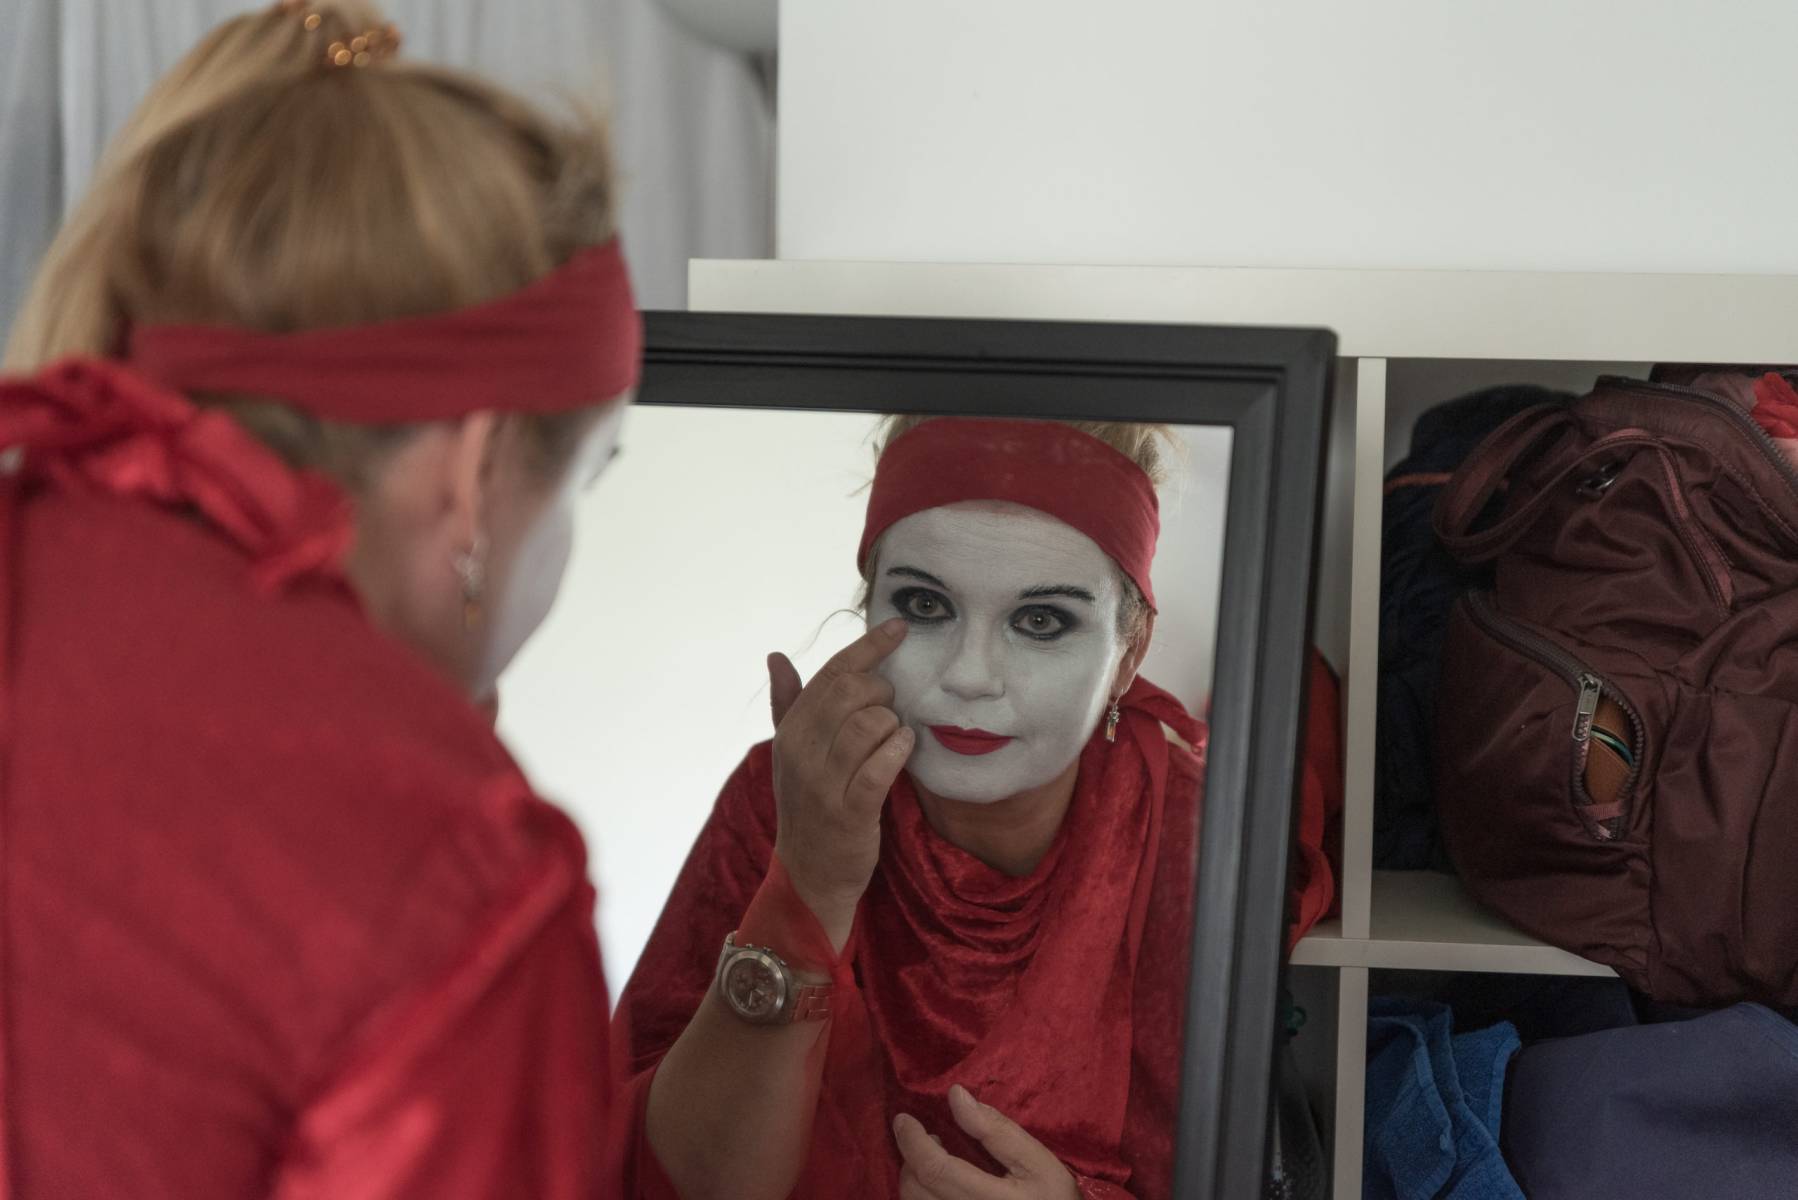 München 20. September 2019 - THE RED REBEL BRIGADE München - ist eine Kunstperformance der Extinction Rebellion München. 

Die Teilnehmer der Gruppe bereiten sich auf eine Auftritt auf den Straßen von München vor. 
Eine Aktivistin vor dem Spiegel kontrolliert das Makeup.
 (Foto: Thomas Vonier)